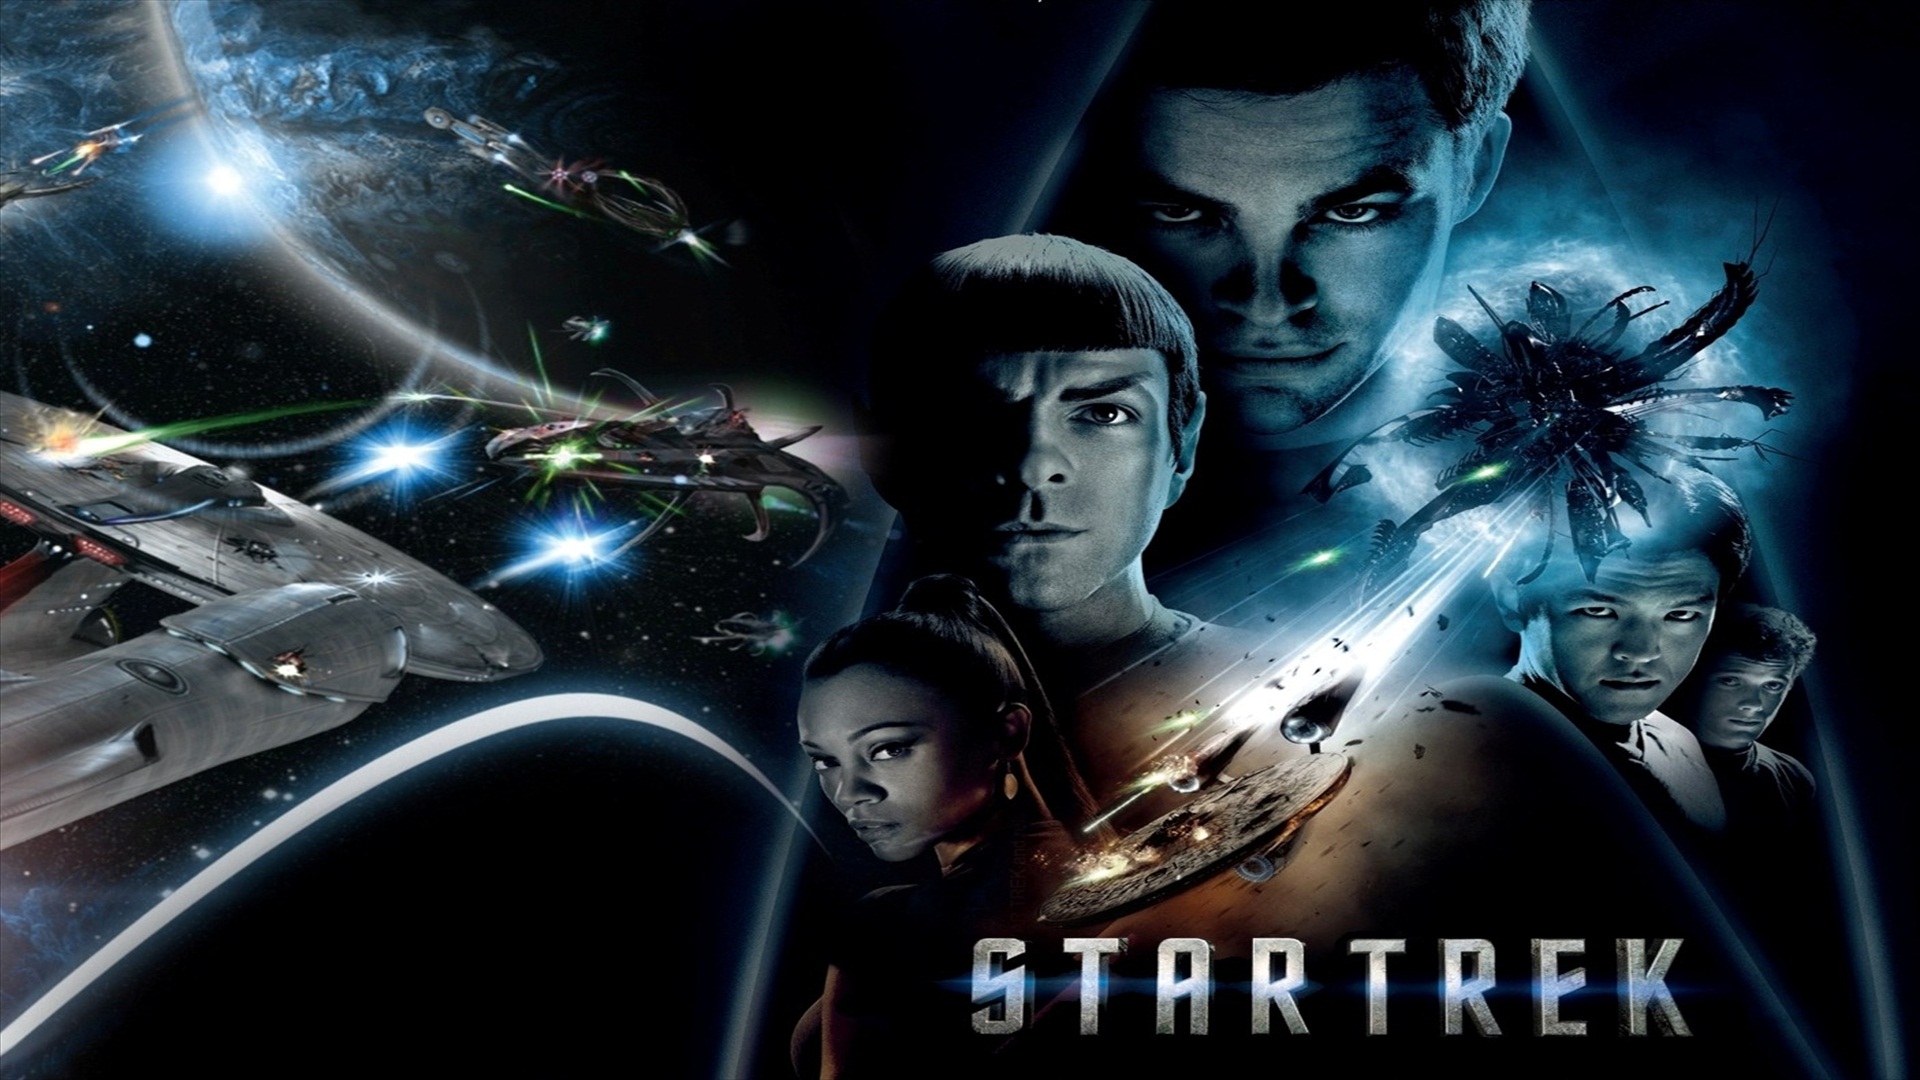 84 Star Trek HD Wallpapers Backgrounds - Wallpaper Abyss